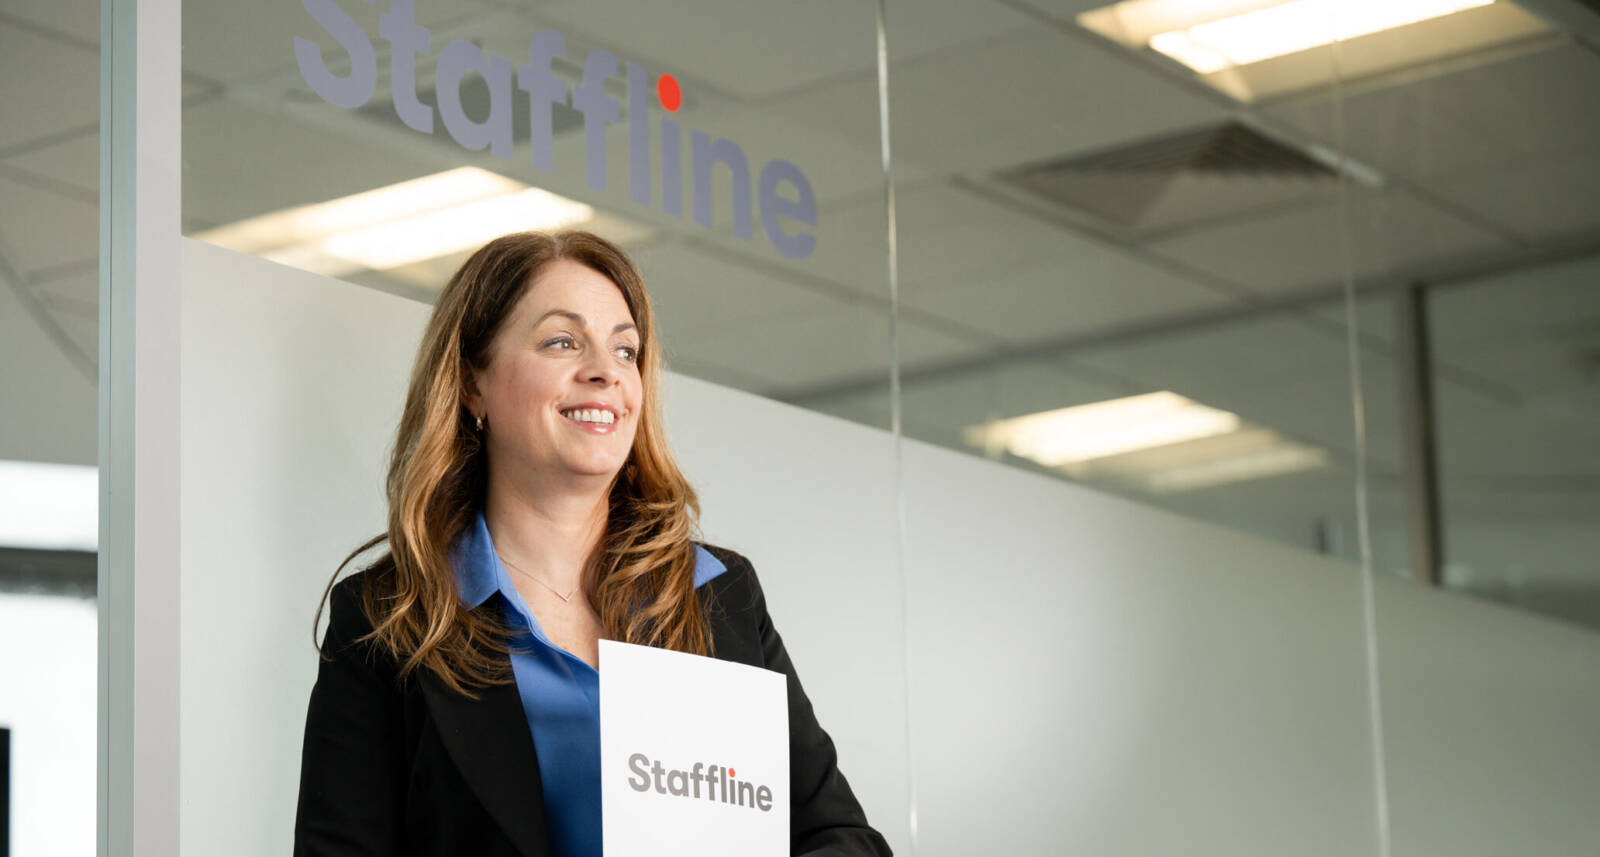 Team member smiling at Staffline office entrance and holding a Staffline booklet